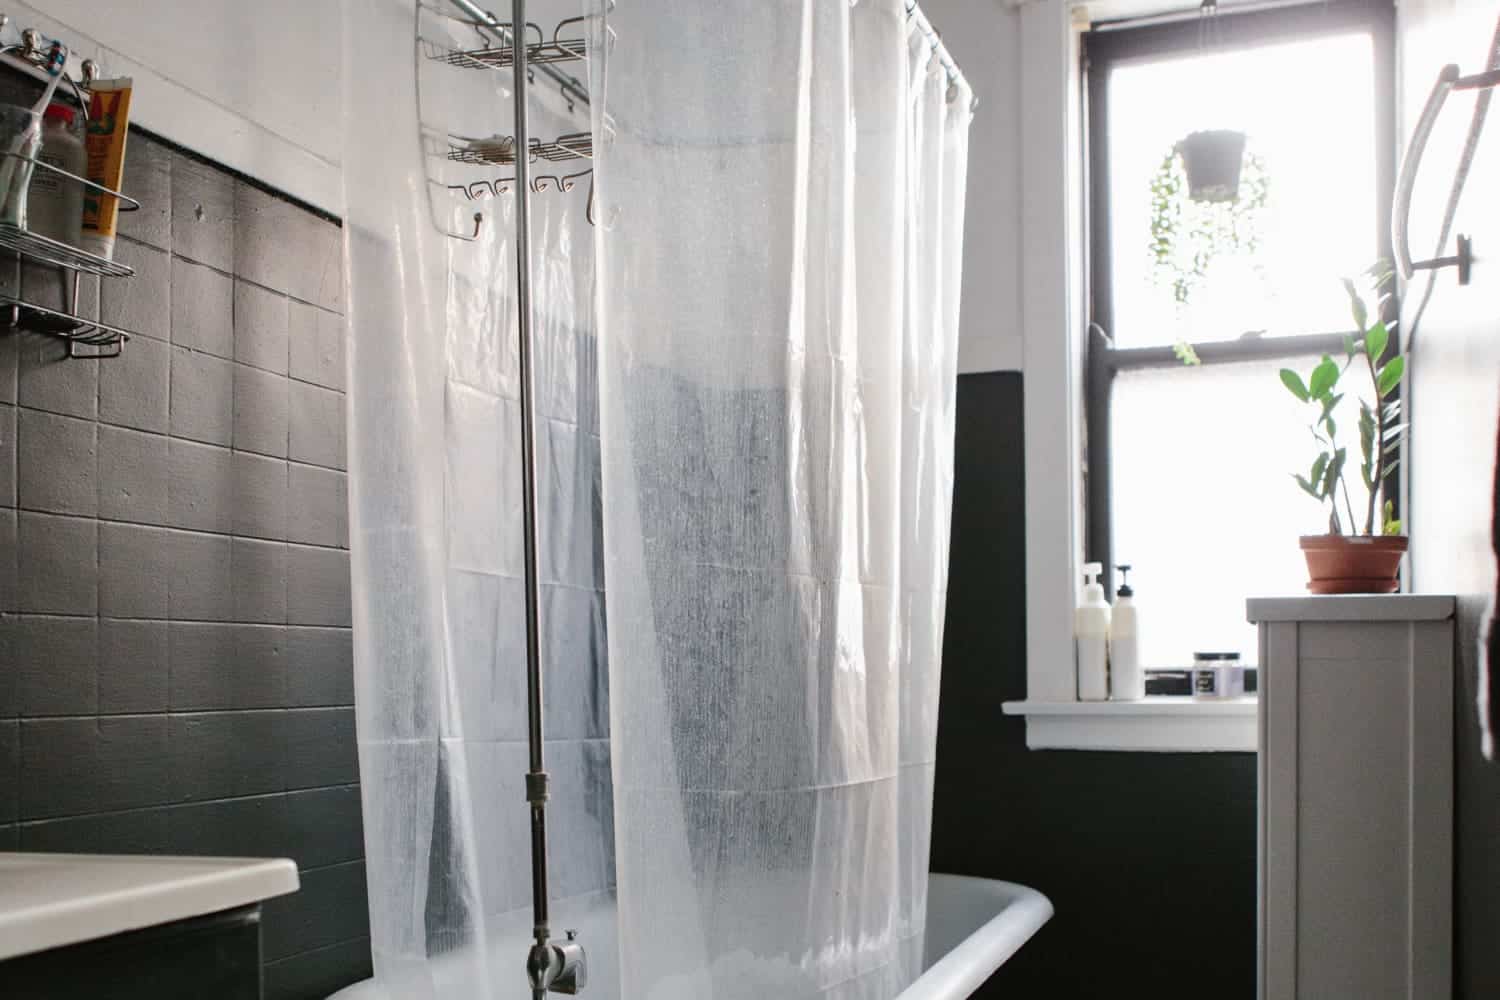 clean curtain shower